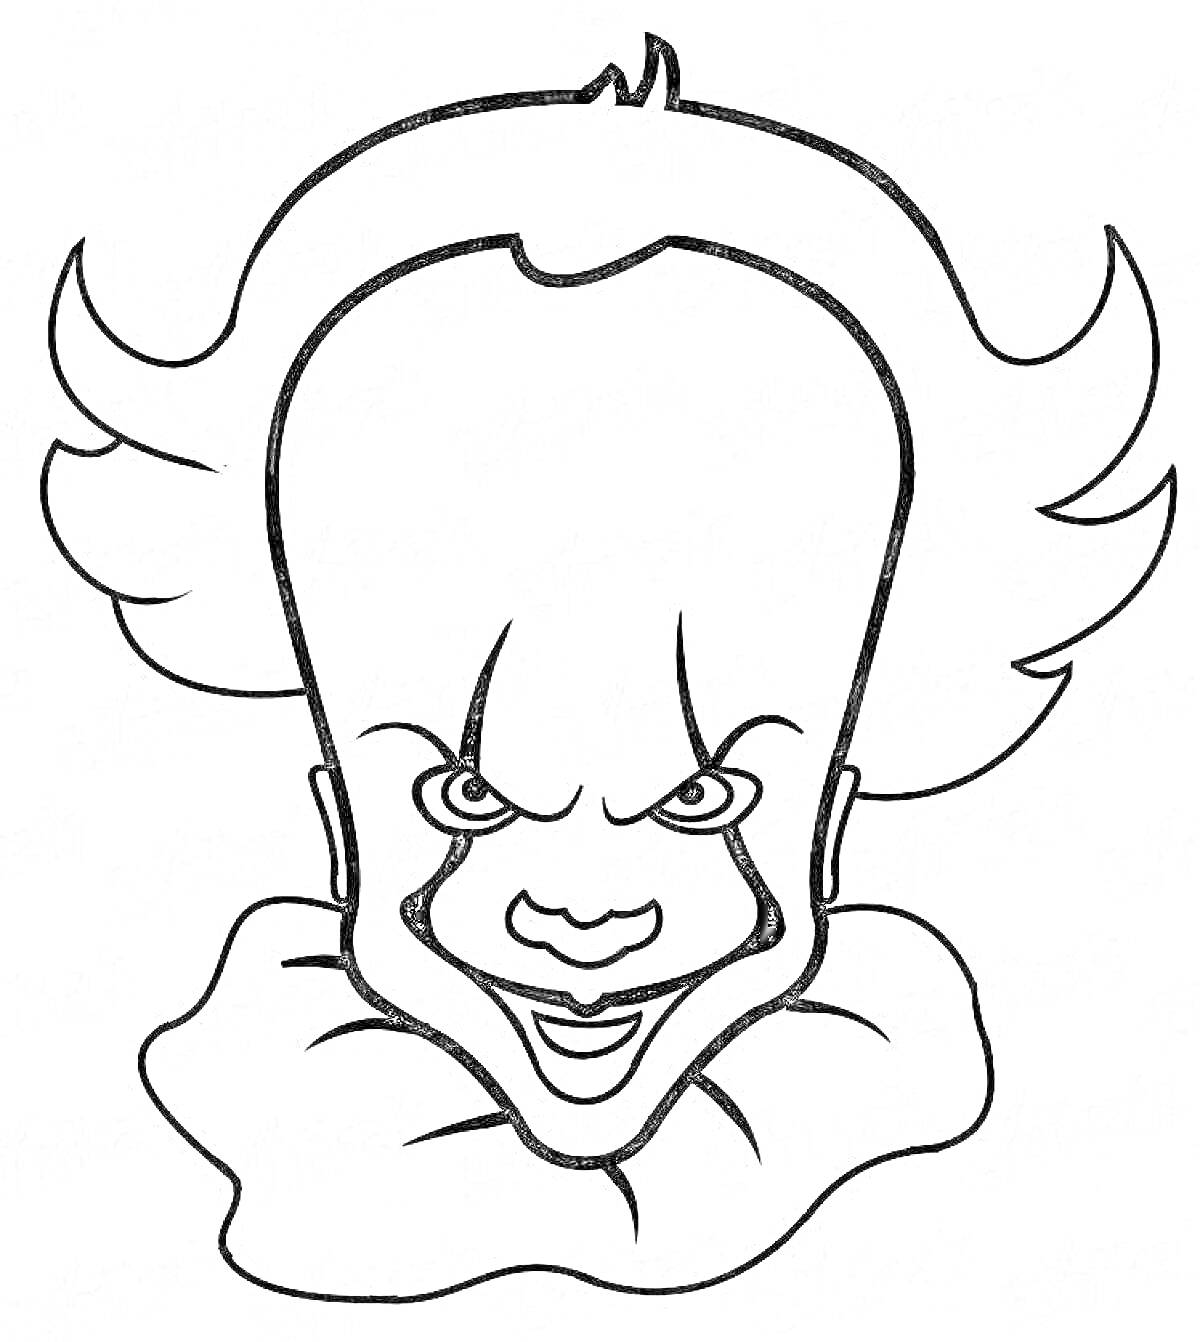 Раскраска Пеннивайз с устрашающим выражением лица, с волосами, стоящими вверх и в стороны, и круговым воротником.